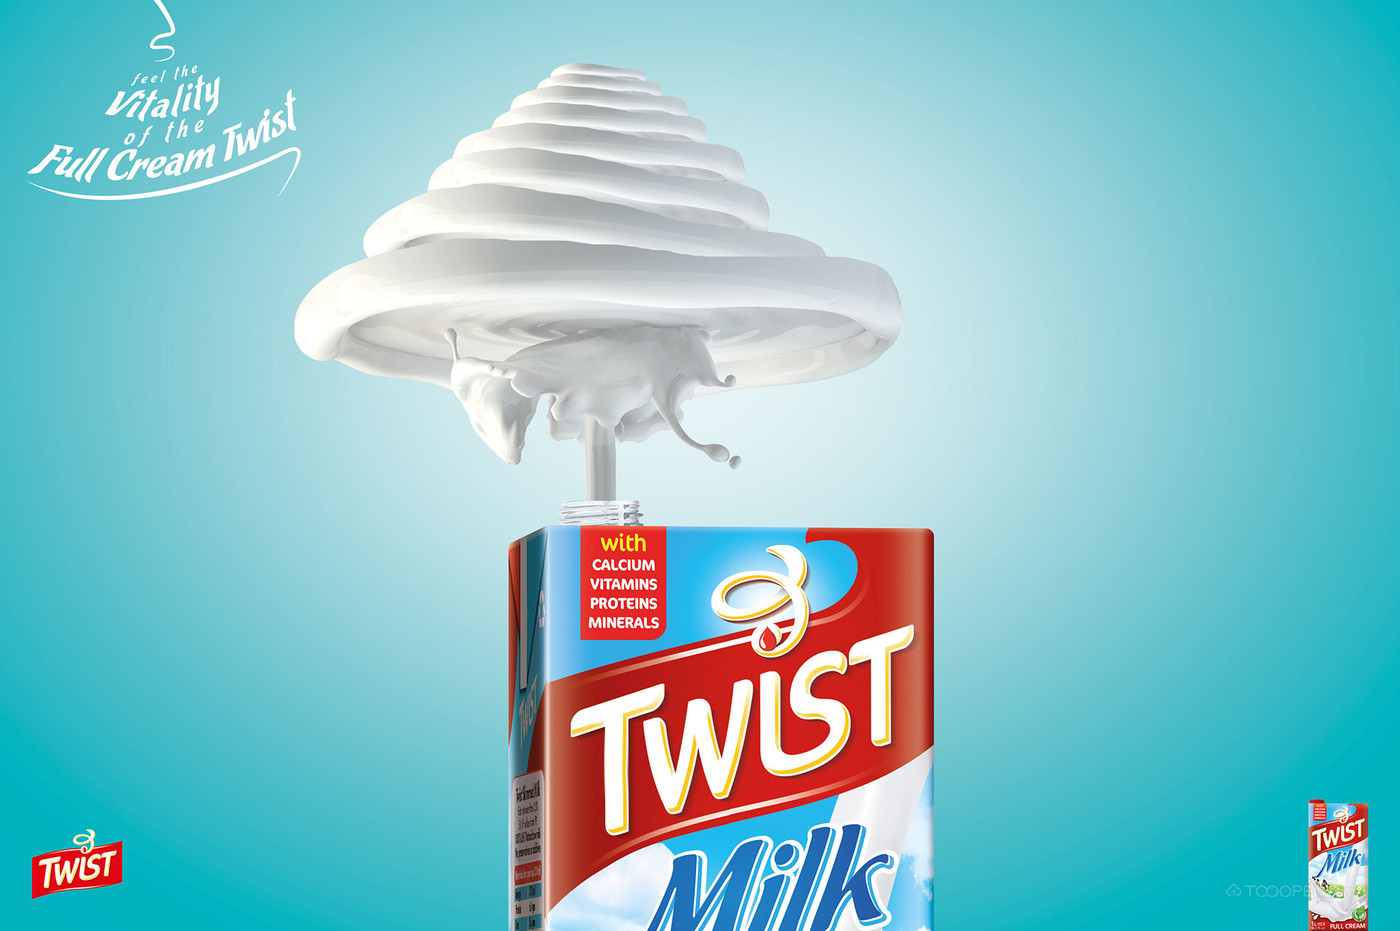 Twist牛奶海报设计作品欣赏-03